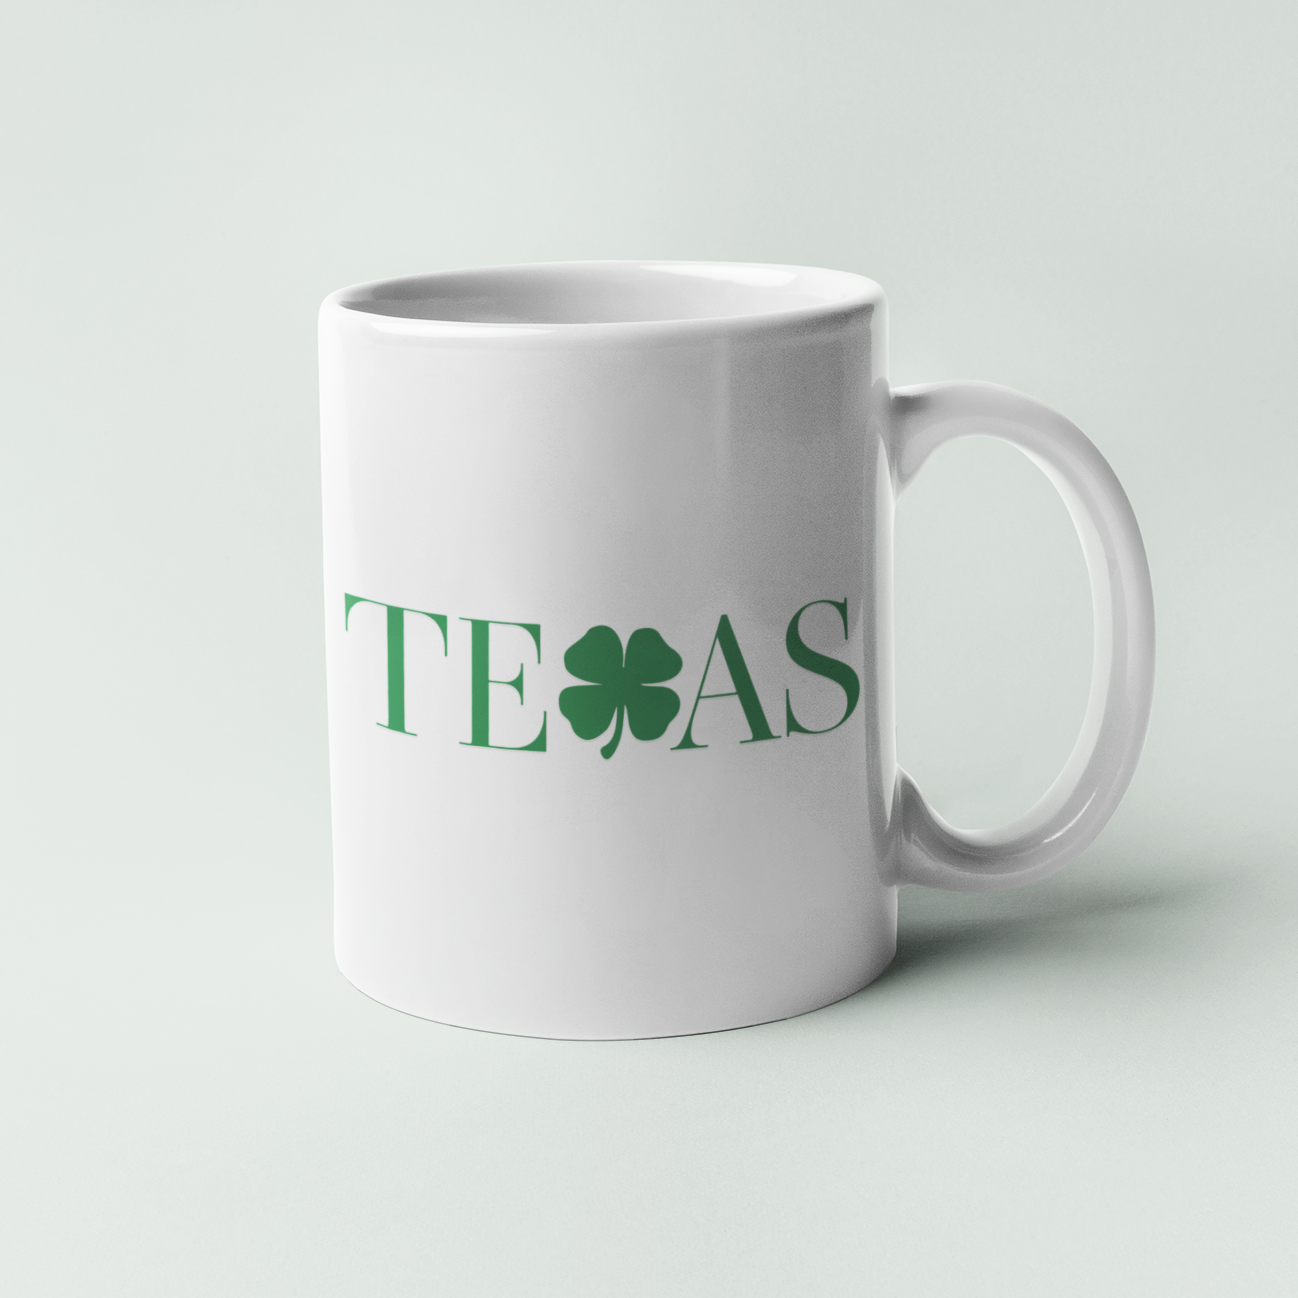 Texas Clover Mug